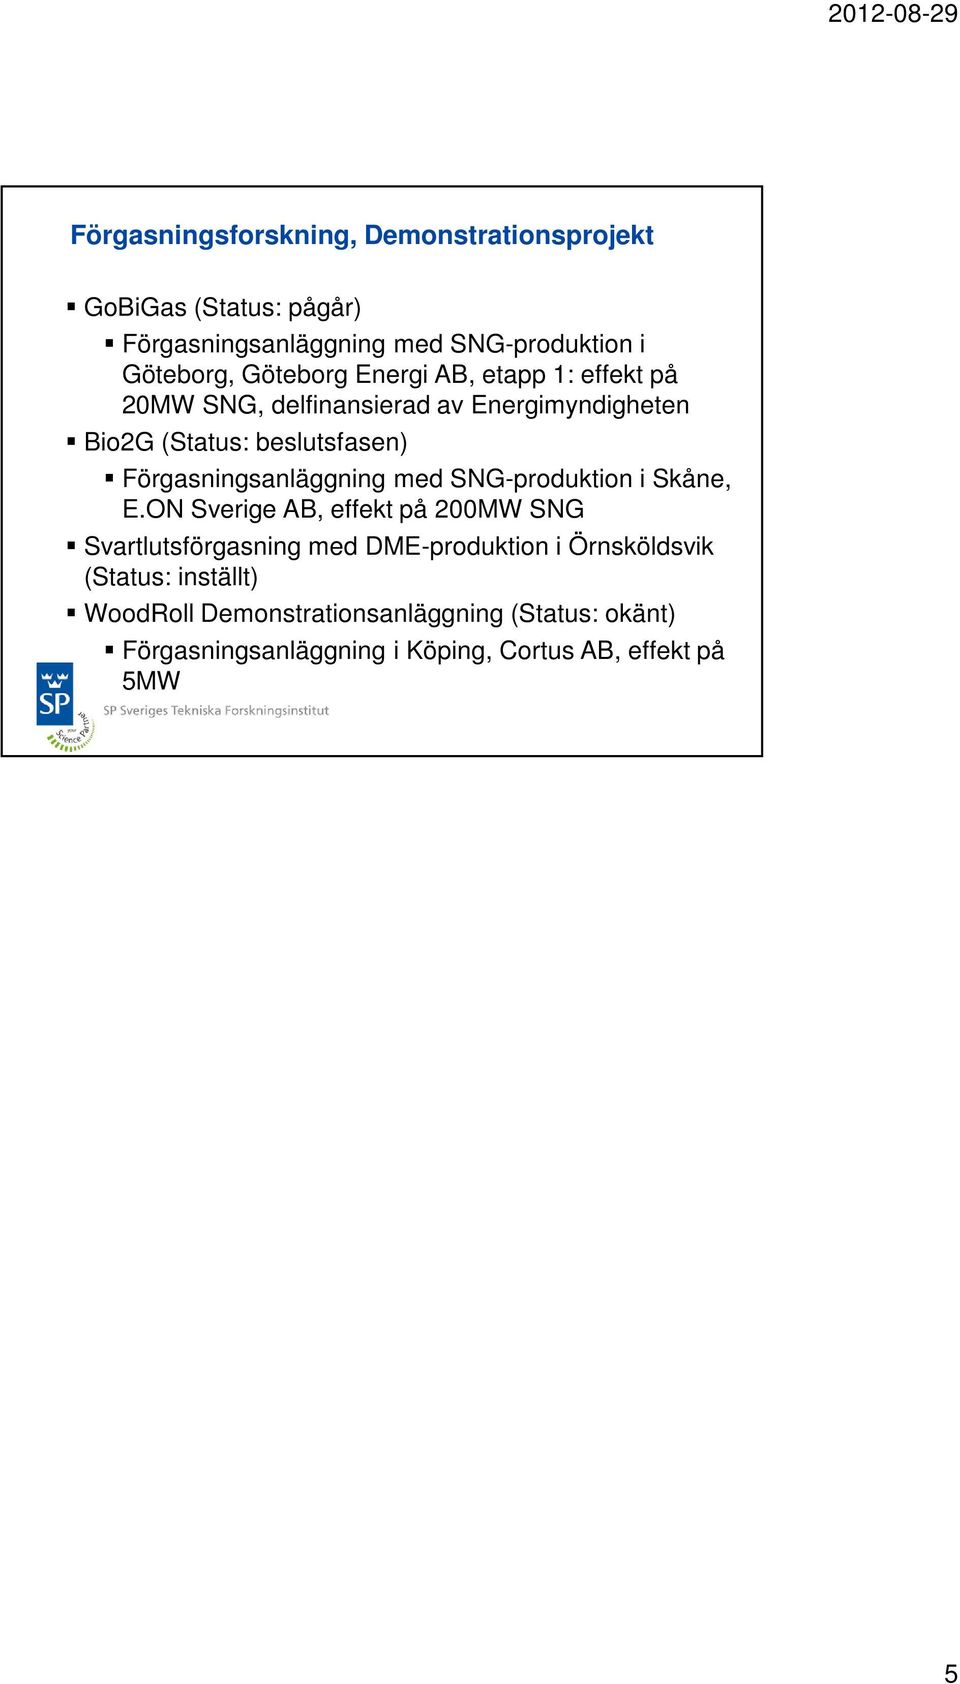 Förgasningsanläggning med SNG-produktion i Skåne, E.